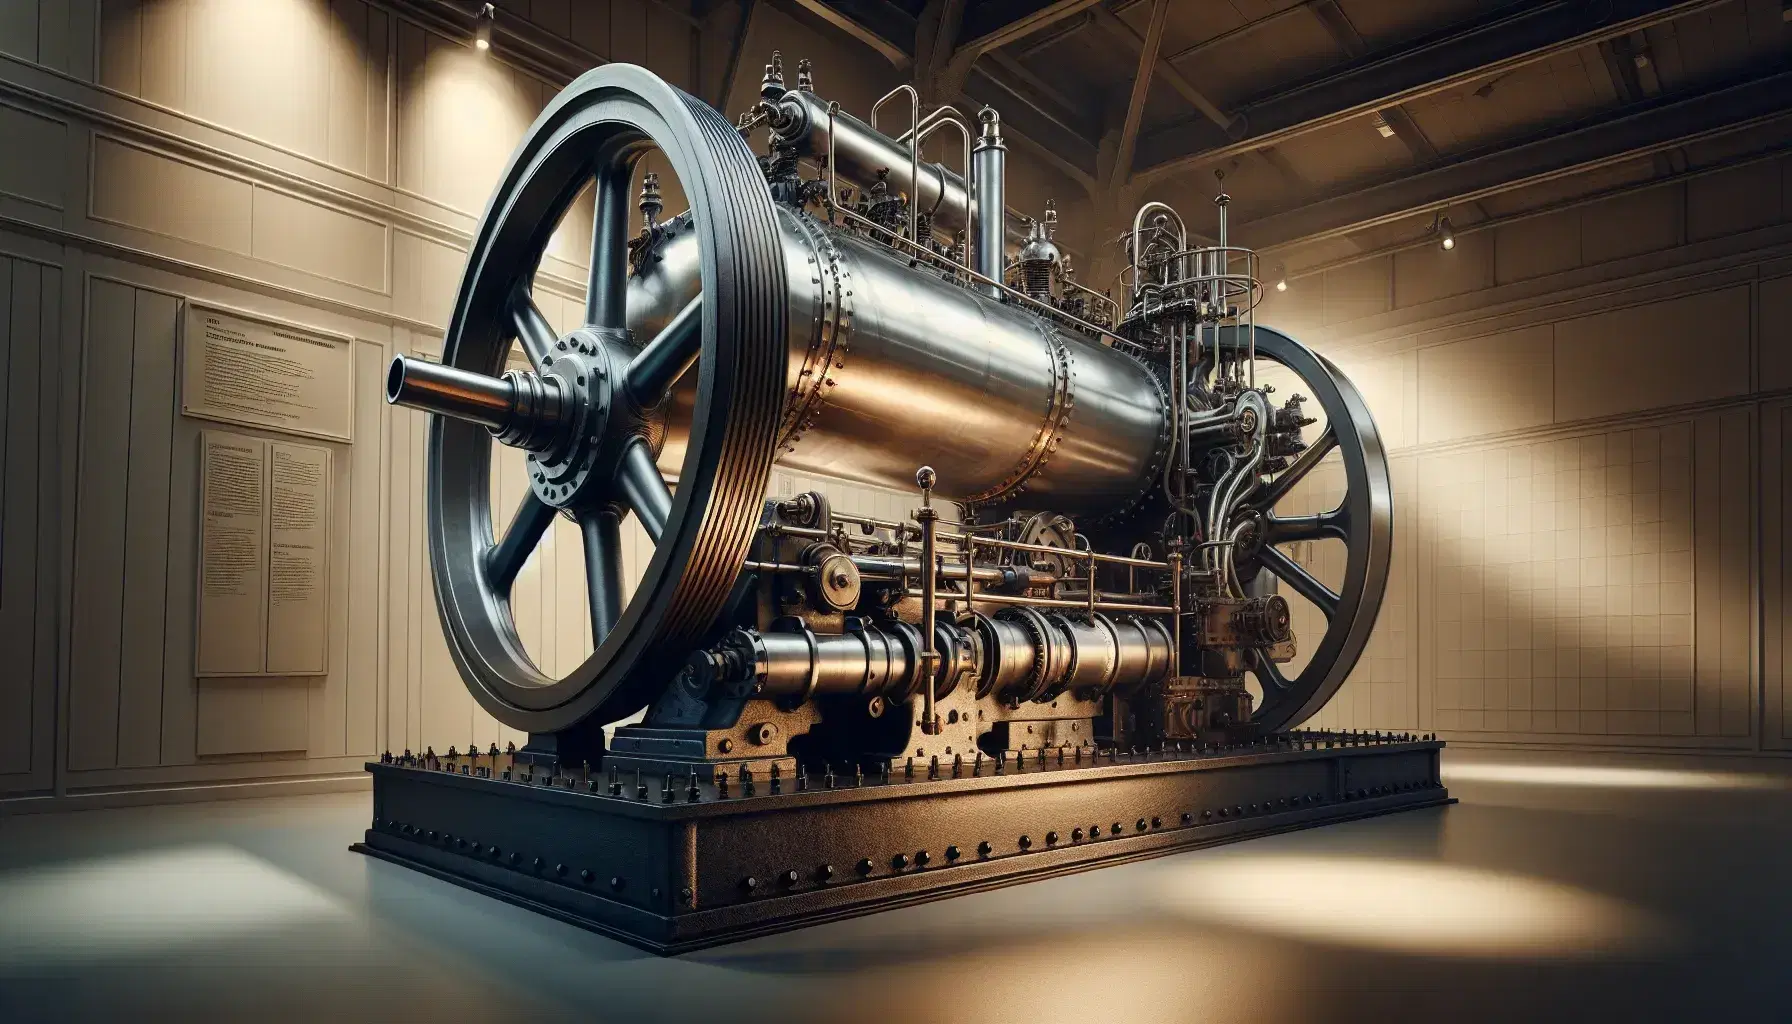 Máquina de vapor estacionaria de la era industrial con cilindro metálico, tuberías y rueda de paletas en base de hierro fundido, expuesta en museo con iluminación suave.